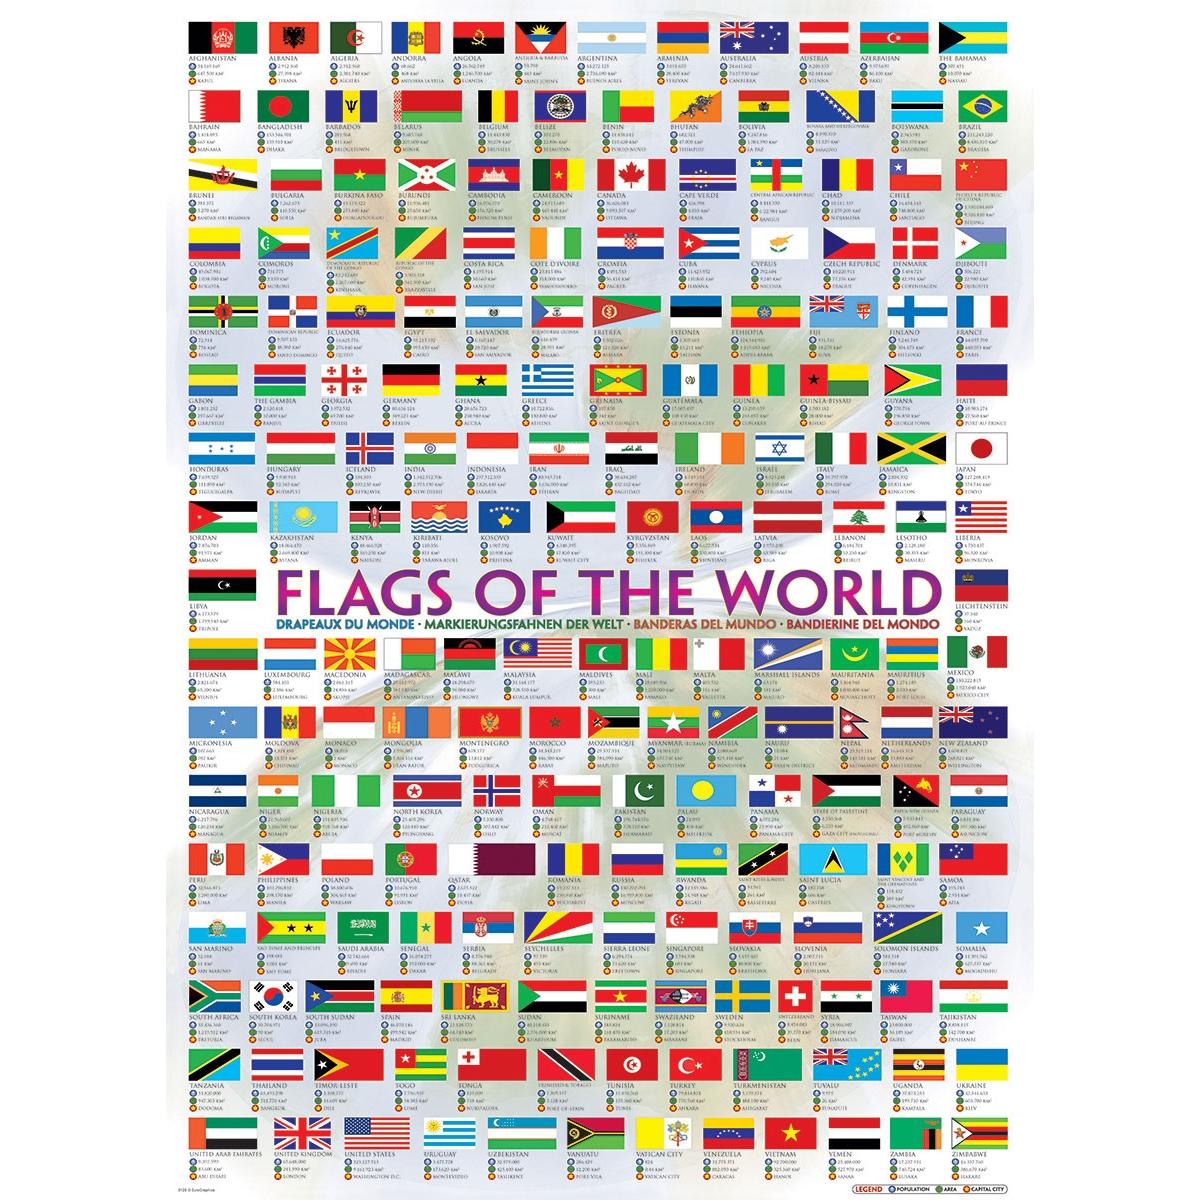 Puzzle 1000 pièces : Les drapeaux du monde - Eurographics - Rue des Puzzles